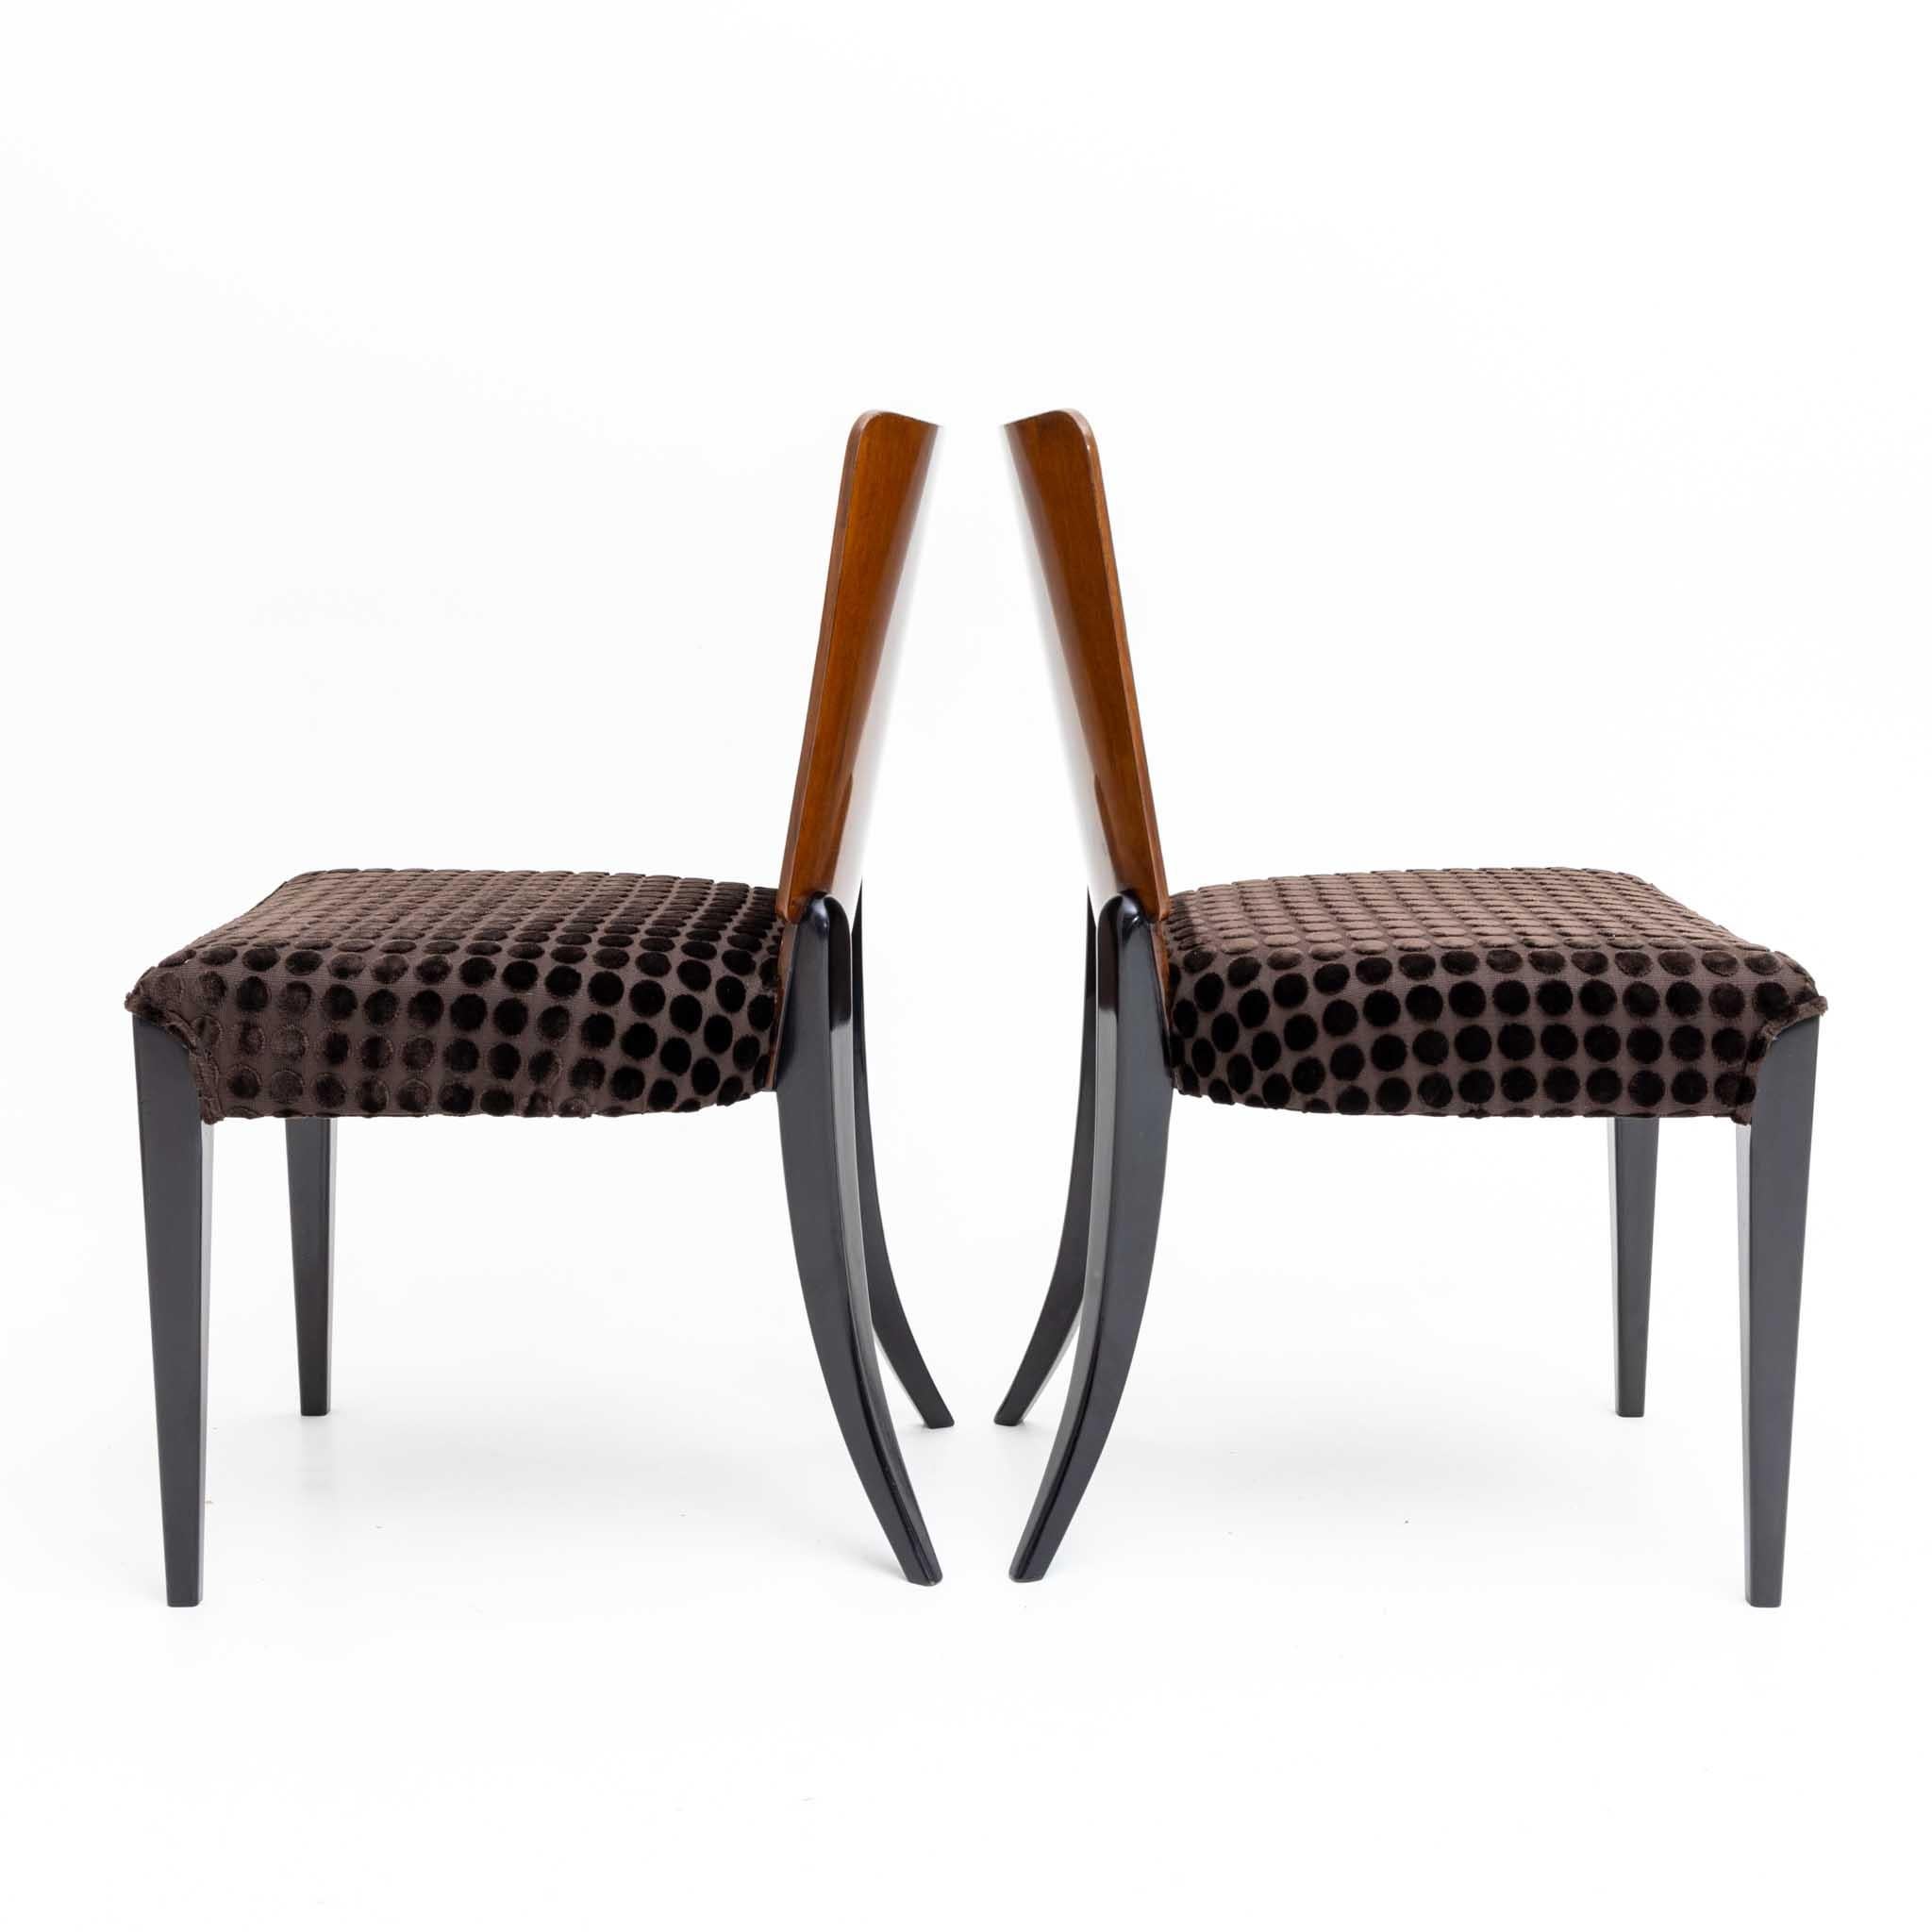 Acht Stühle von Jindrich Halabala mit ebonisierten Beinen und trapezförmiger Rückenlehne. Die Stühle sind restauriert und in sehr gutem Zustand.